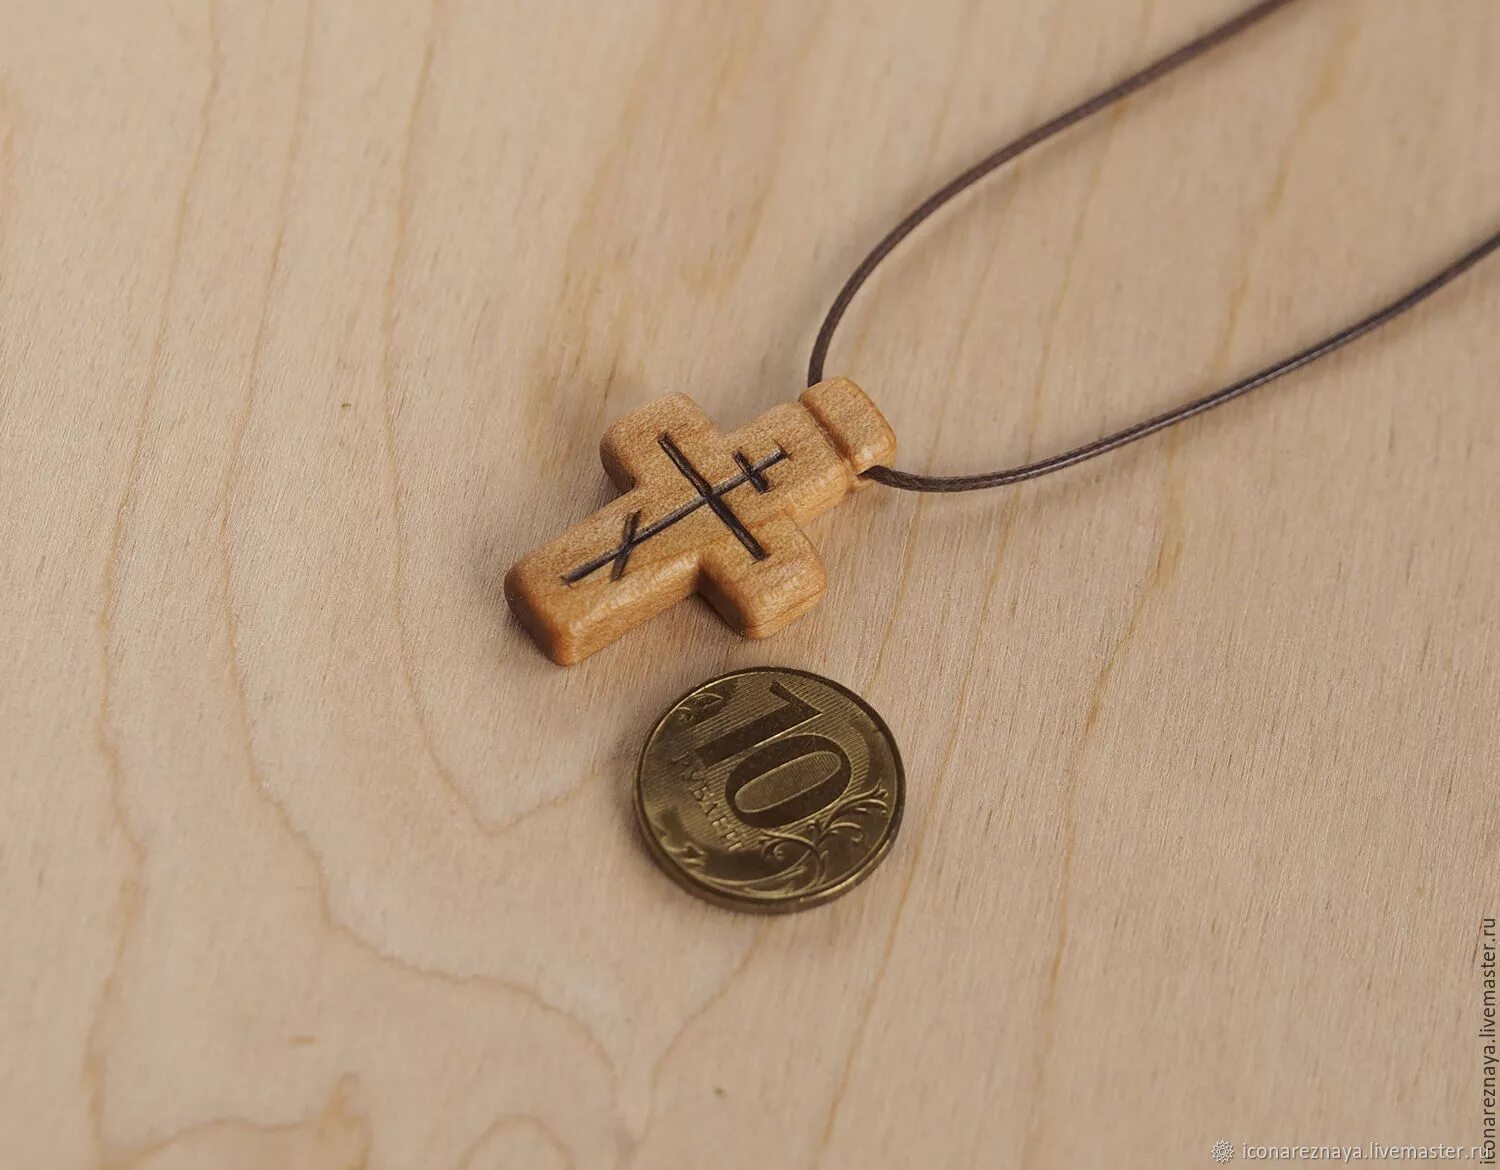 Деревянный крестик нательный. Нательный крест из дерева. Небольшие деревянные крестики. Крестик деревянный нательный православный. Православные нательные деревянные